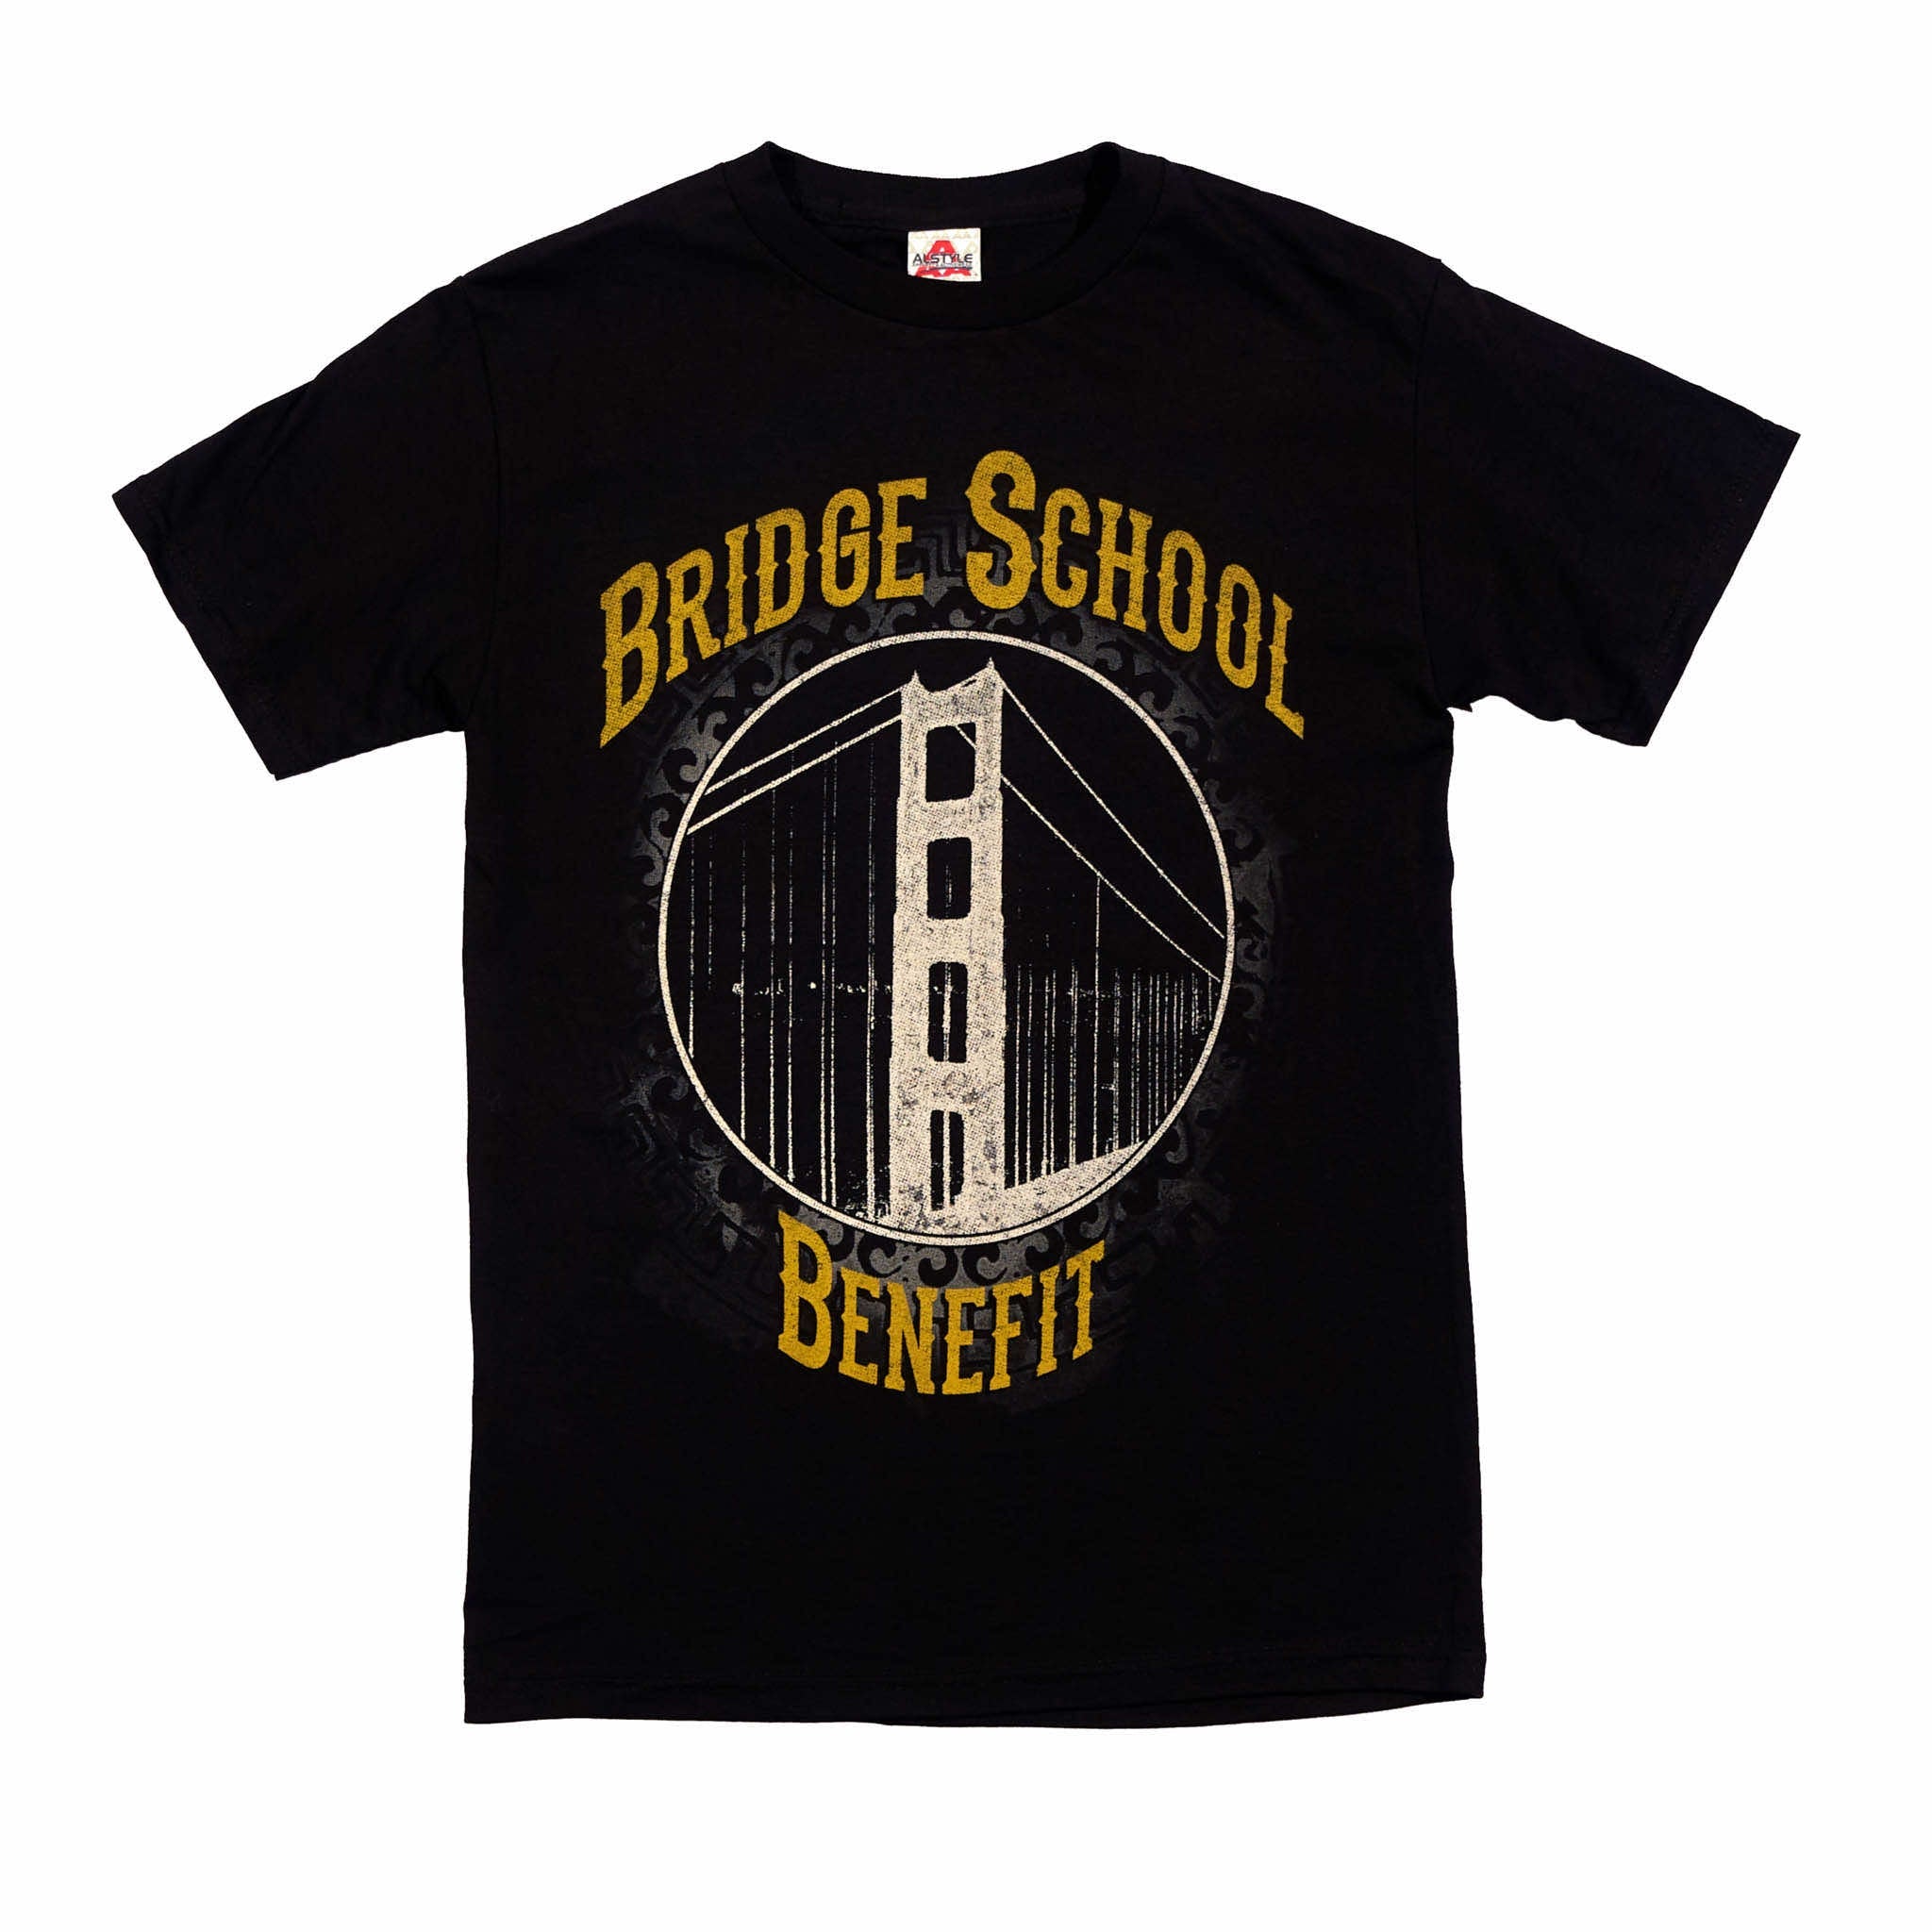 2013 - 27th Bridge School Benefit Concert Short Sleeve Tee